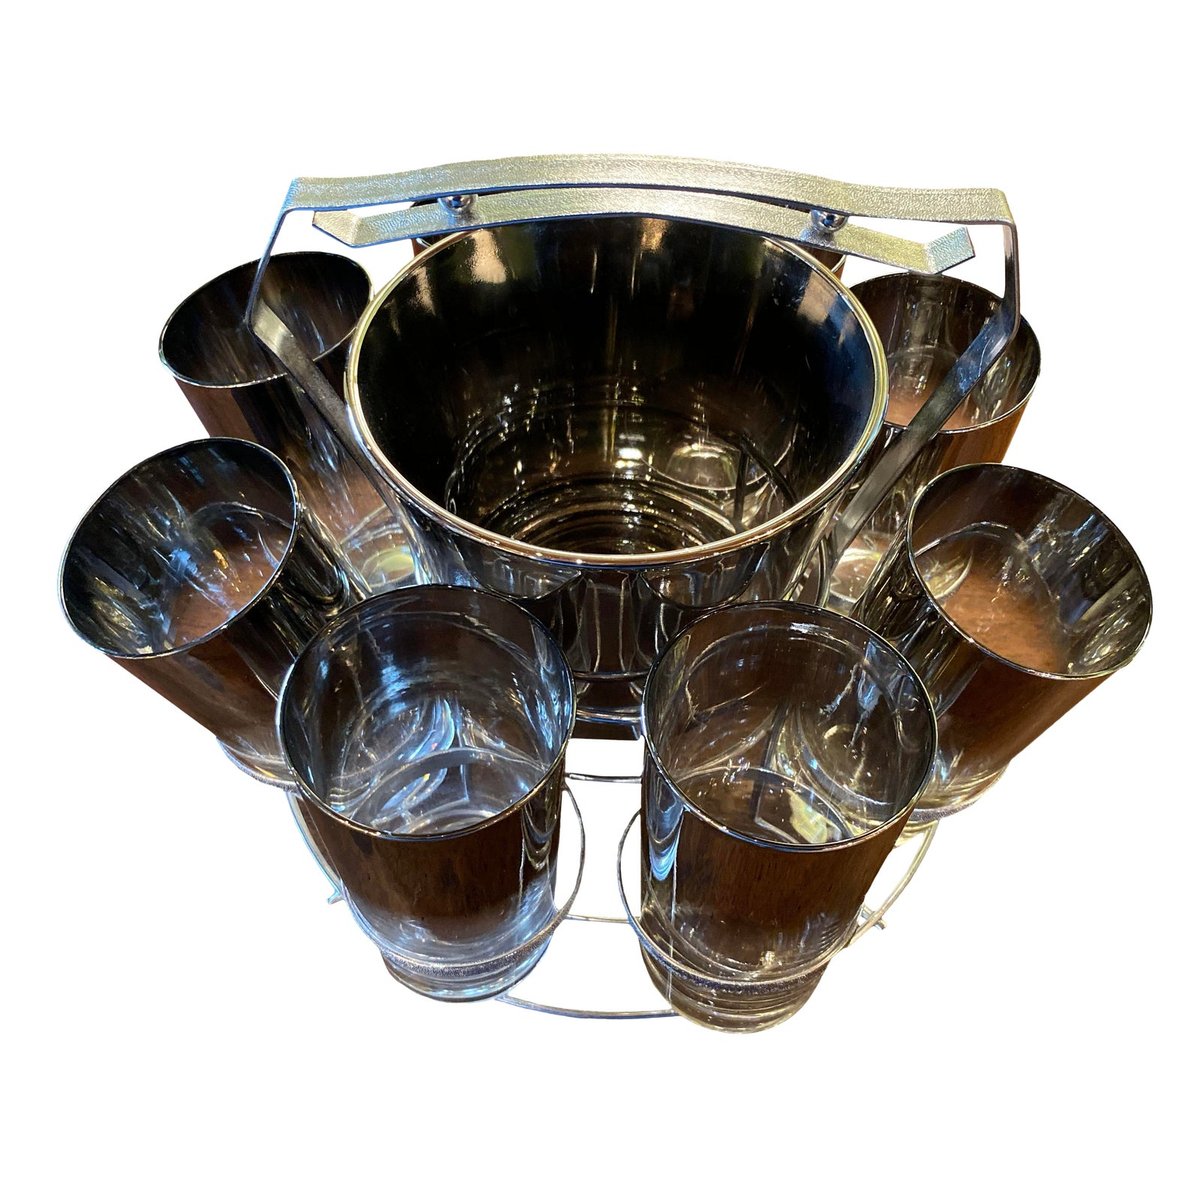 Mid 20th Century Dorothy Thorpe Glassware Set⁠
⁠
#bellafrenchantiques #antiquerowdallas #midcenturybarset #dorothythrope #midcenturyglasses #midcenturydecor #midcenturydallas #barset #glassware #homedecor #interiordesign 

soo.nr/zlzP